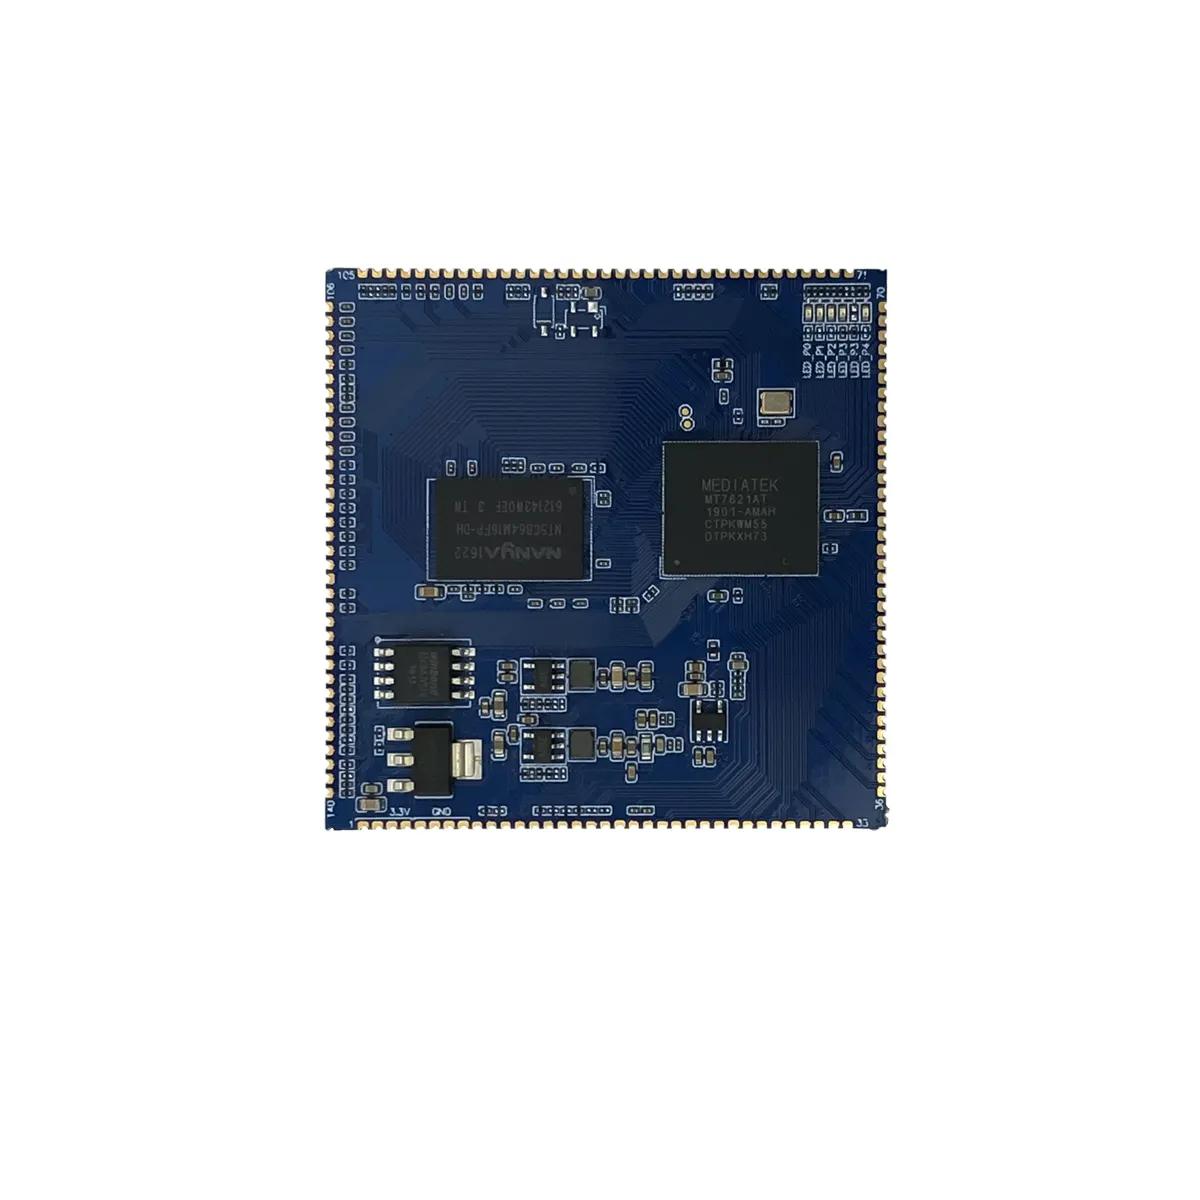 Original mt7621a HLK-7621 gigabit 10/100/1000mbps, módulo de roteador com rgmii/usb3.0 2.0/pcie/SD-XC/pcie